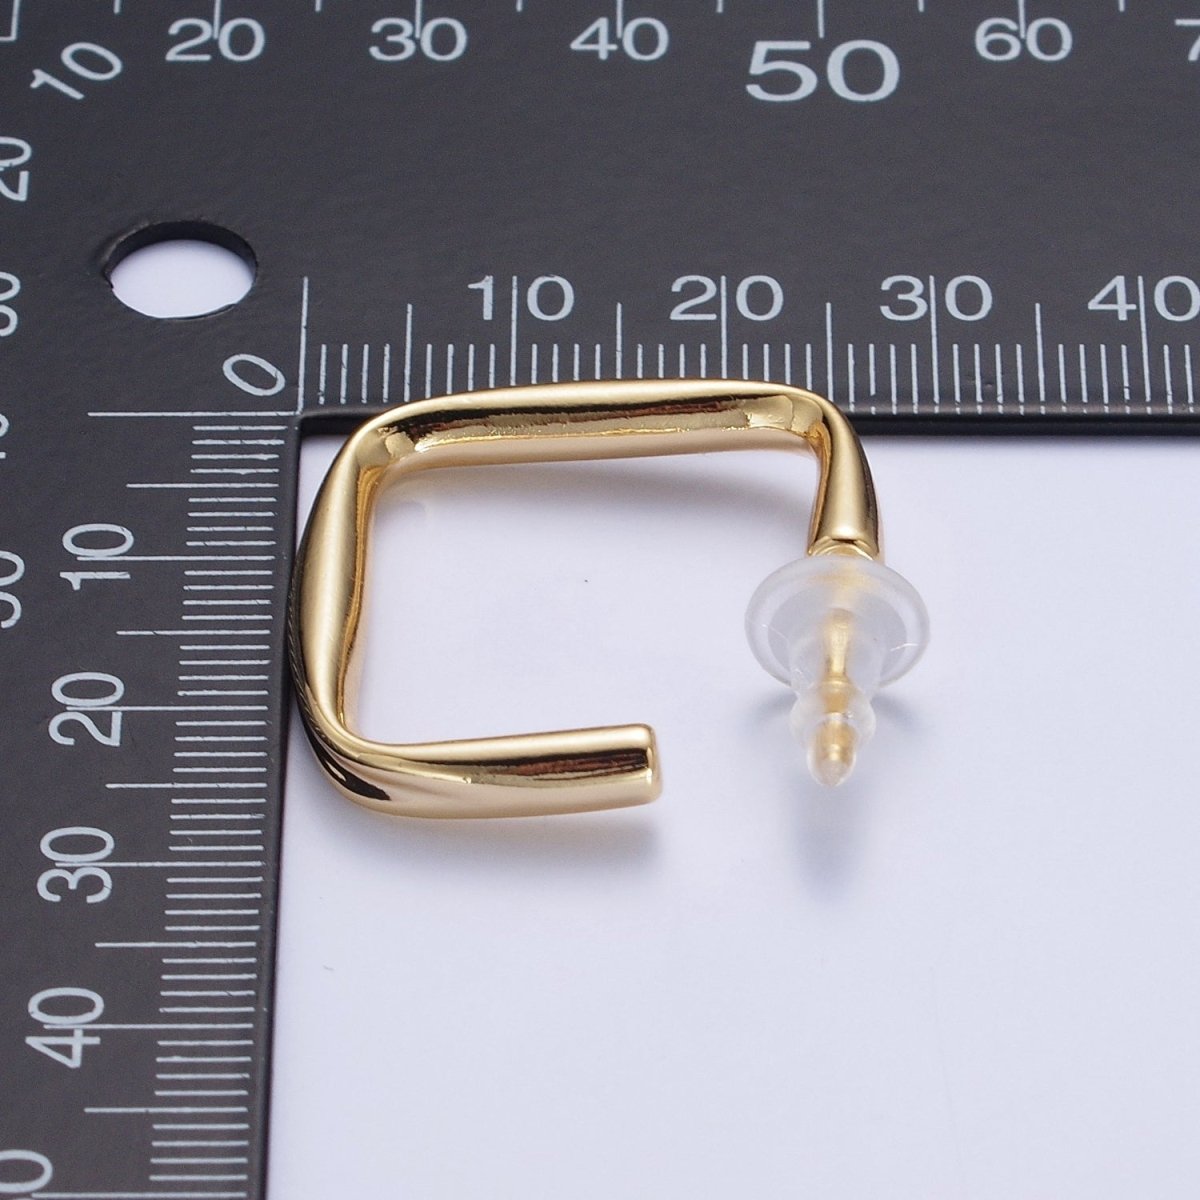 24K Gold Filled J Shaped Boxy Block Hoop Stud Geometric Earrings | X-891 - DLUXCA